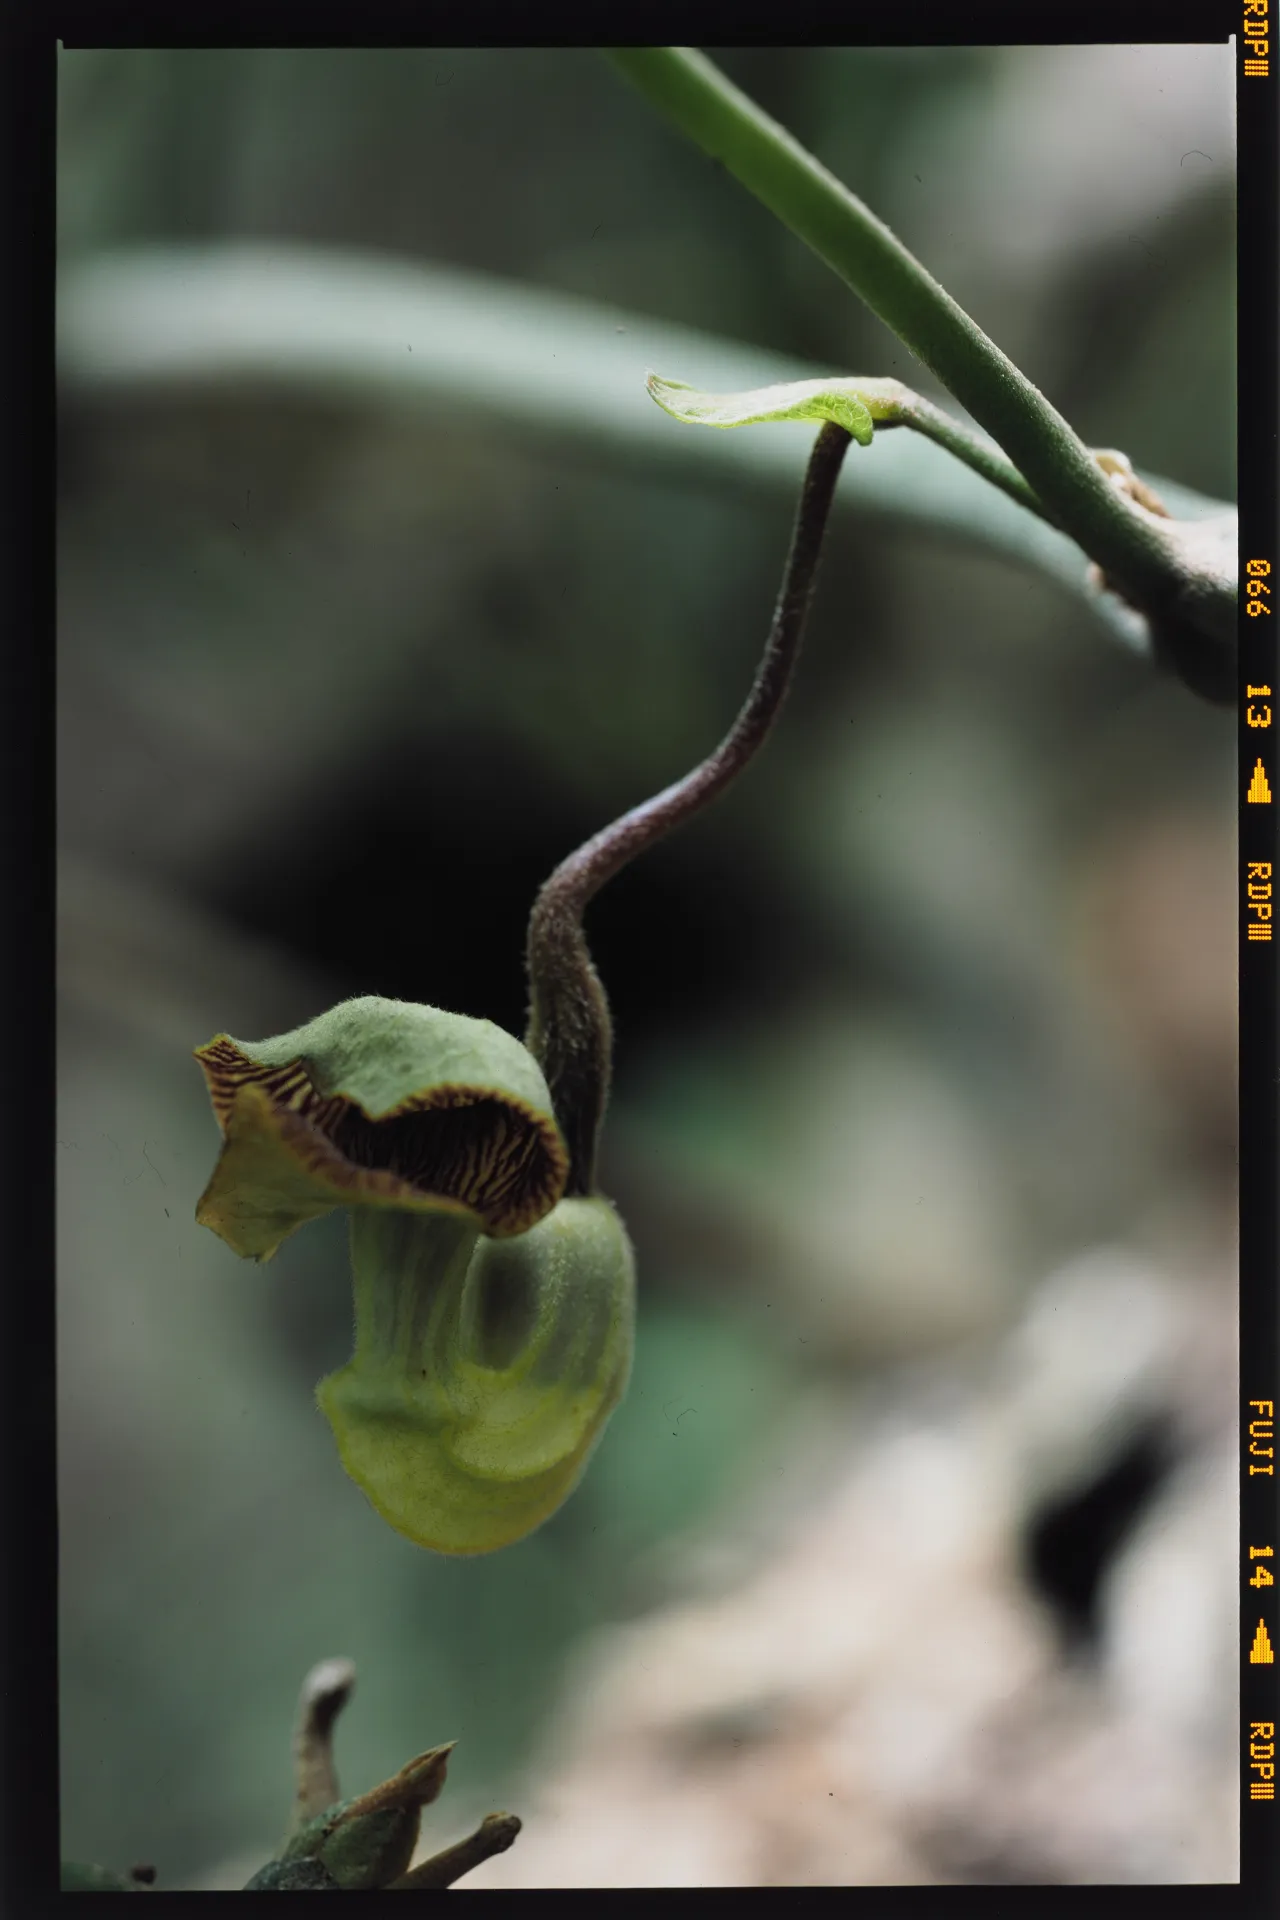 Aristolochia liukiuensis - 琉球馬ノ鈴草